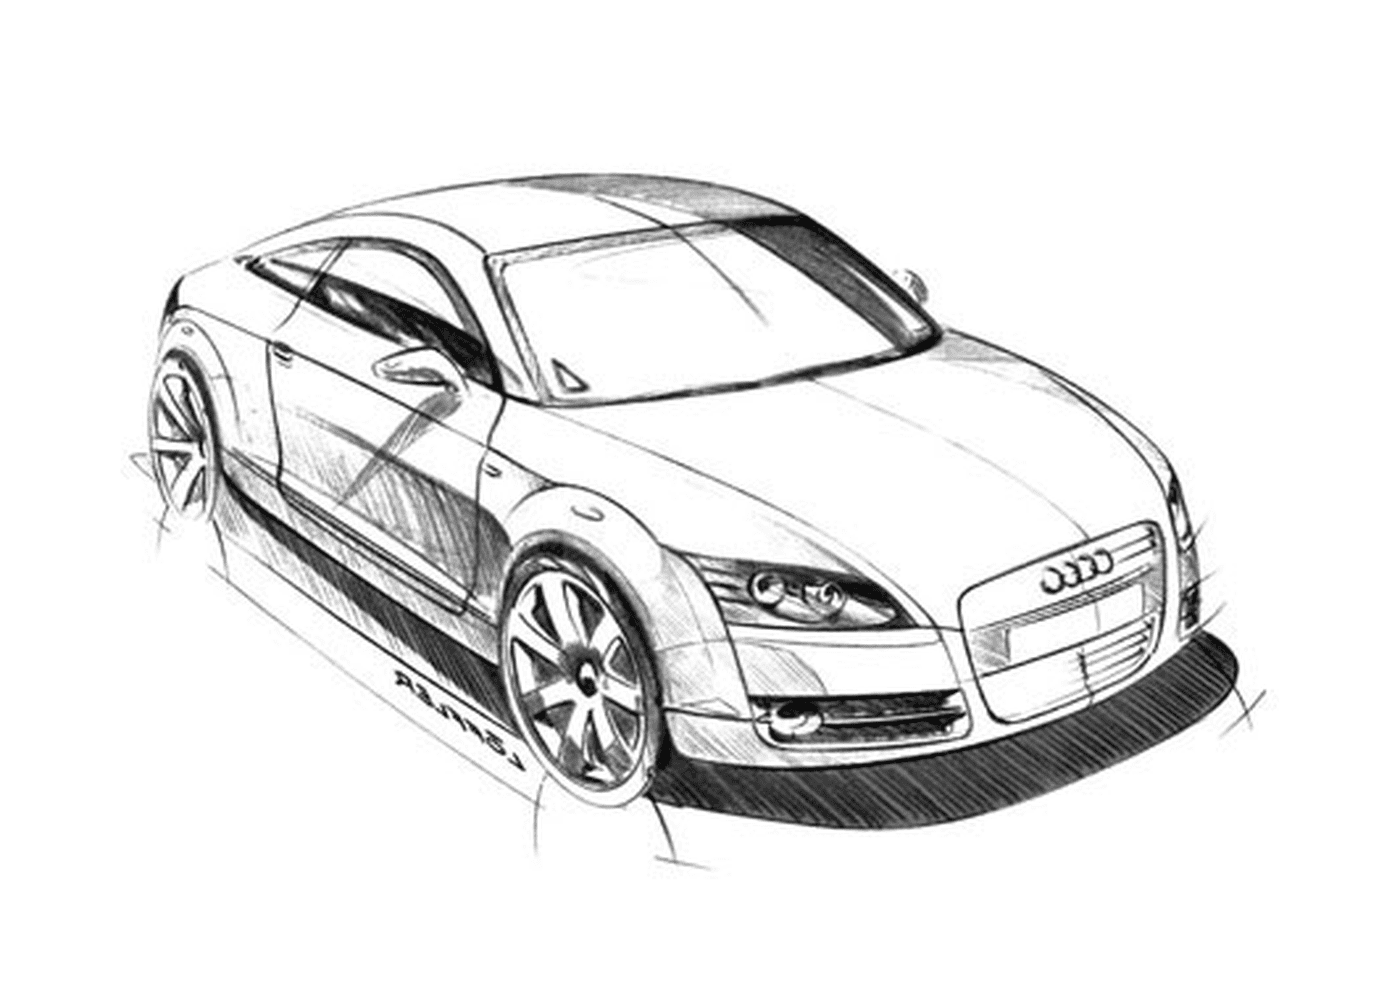   Image voiture Audi, voiture Audi 